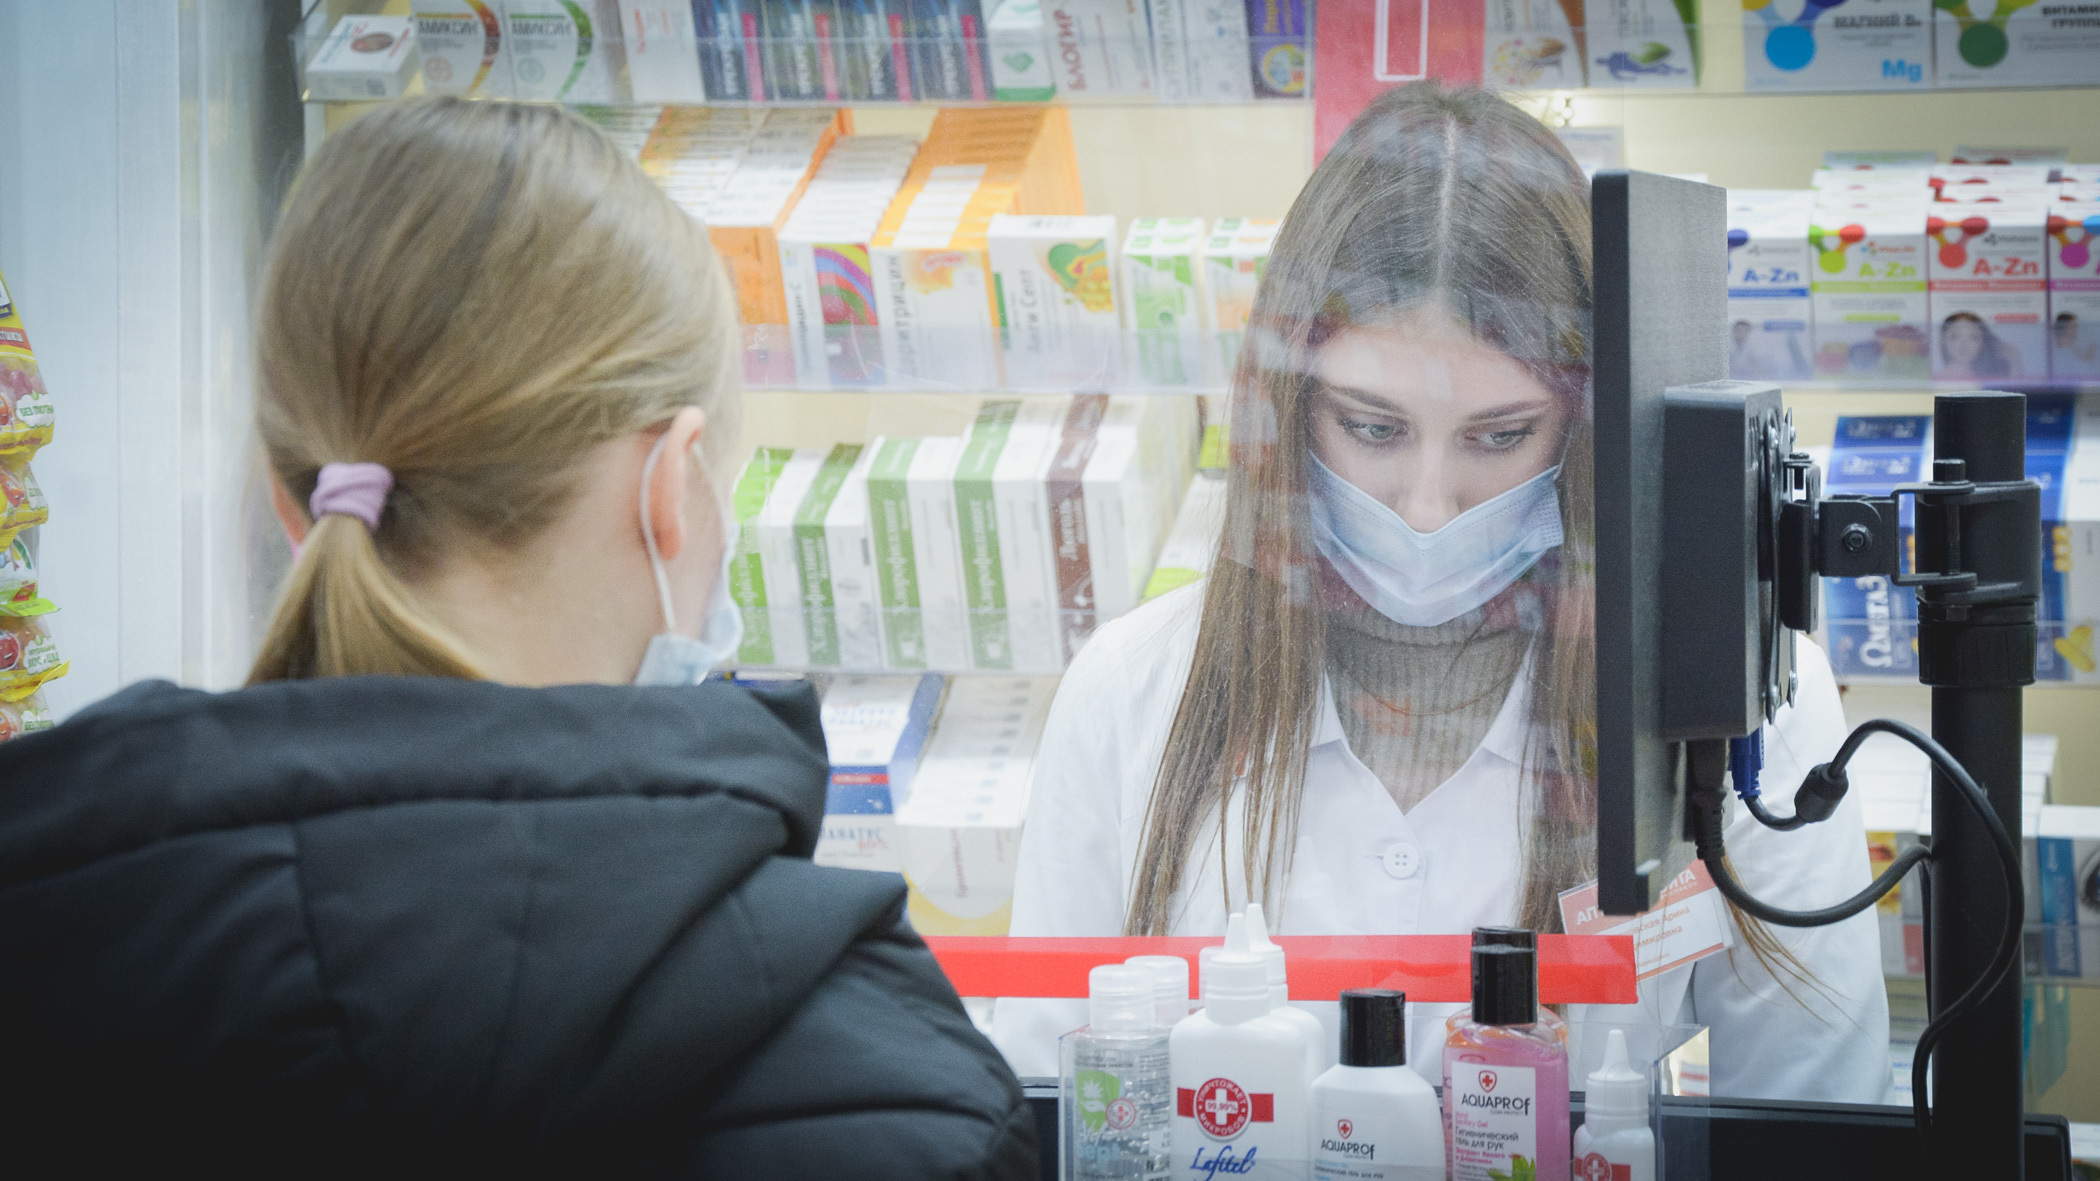 Вопрос издалека: как заказывают лекарства в иностранных аптеках?